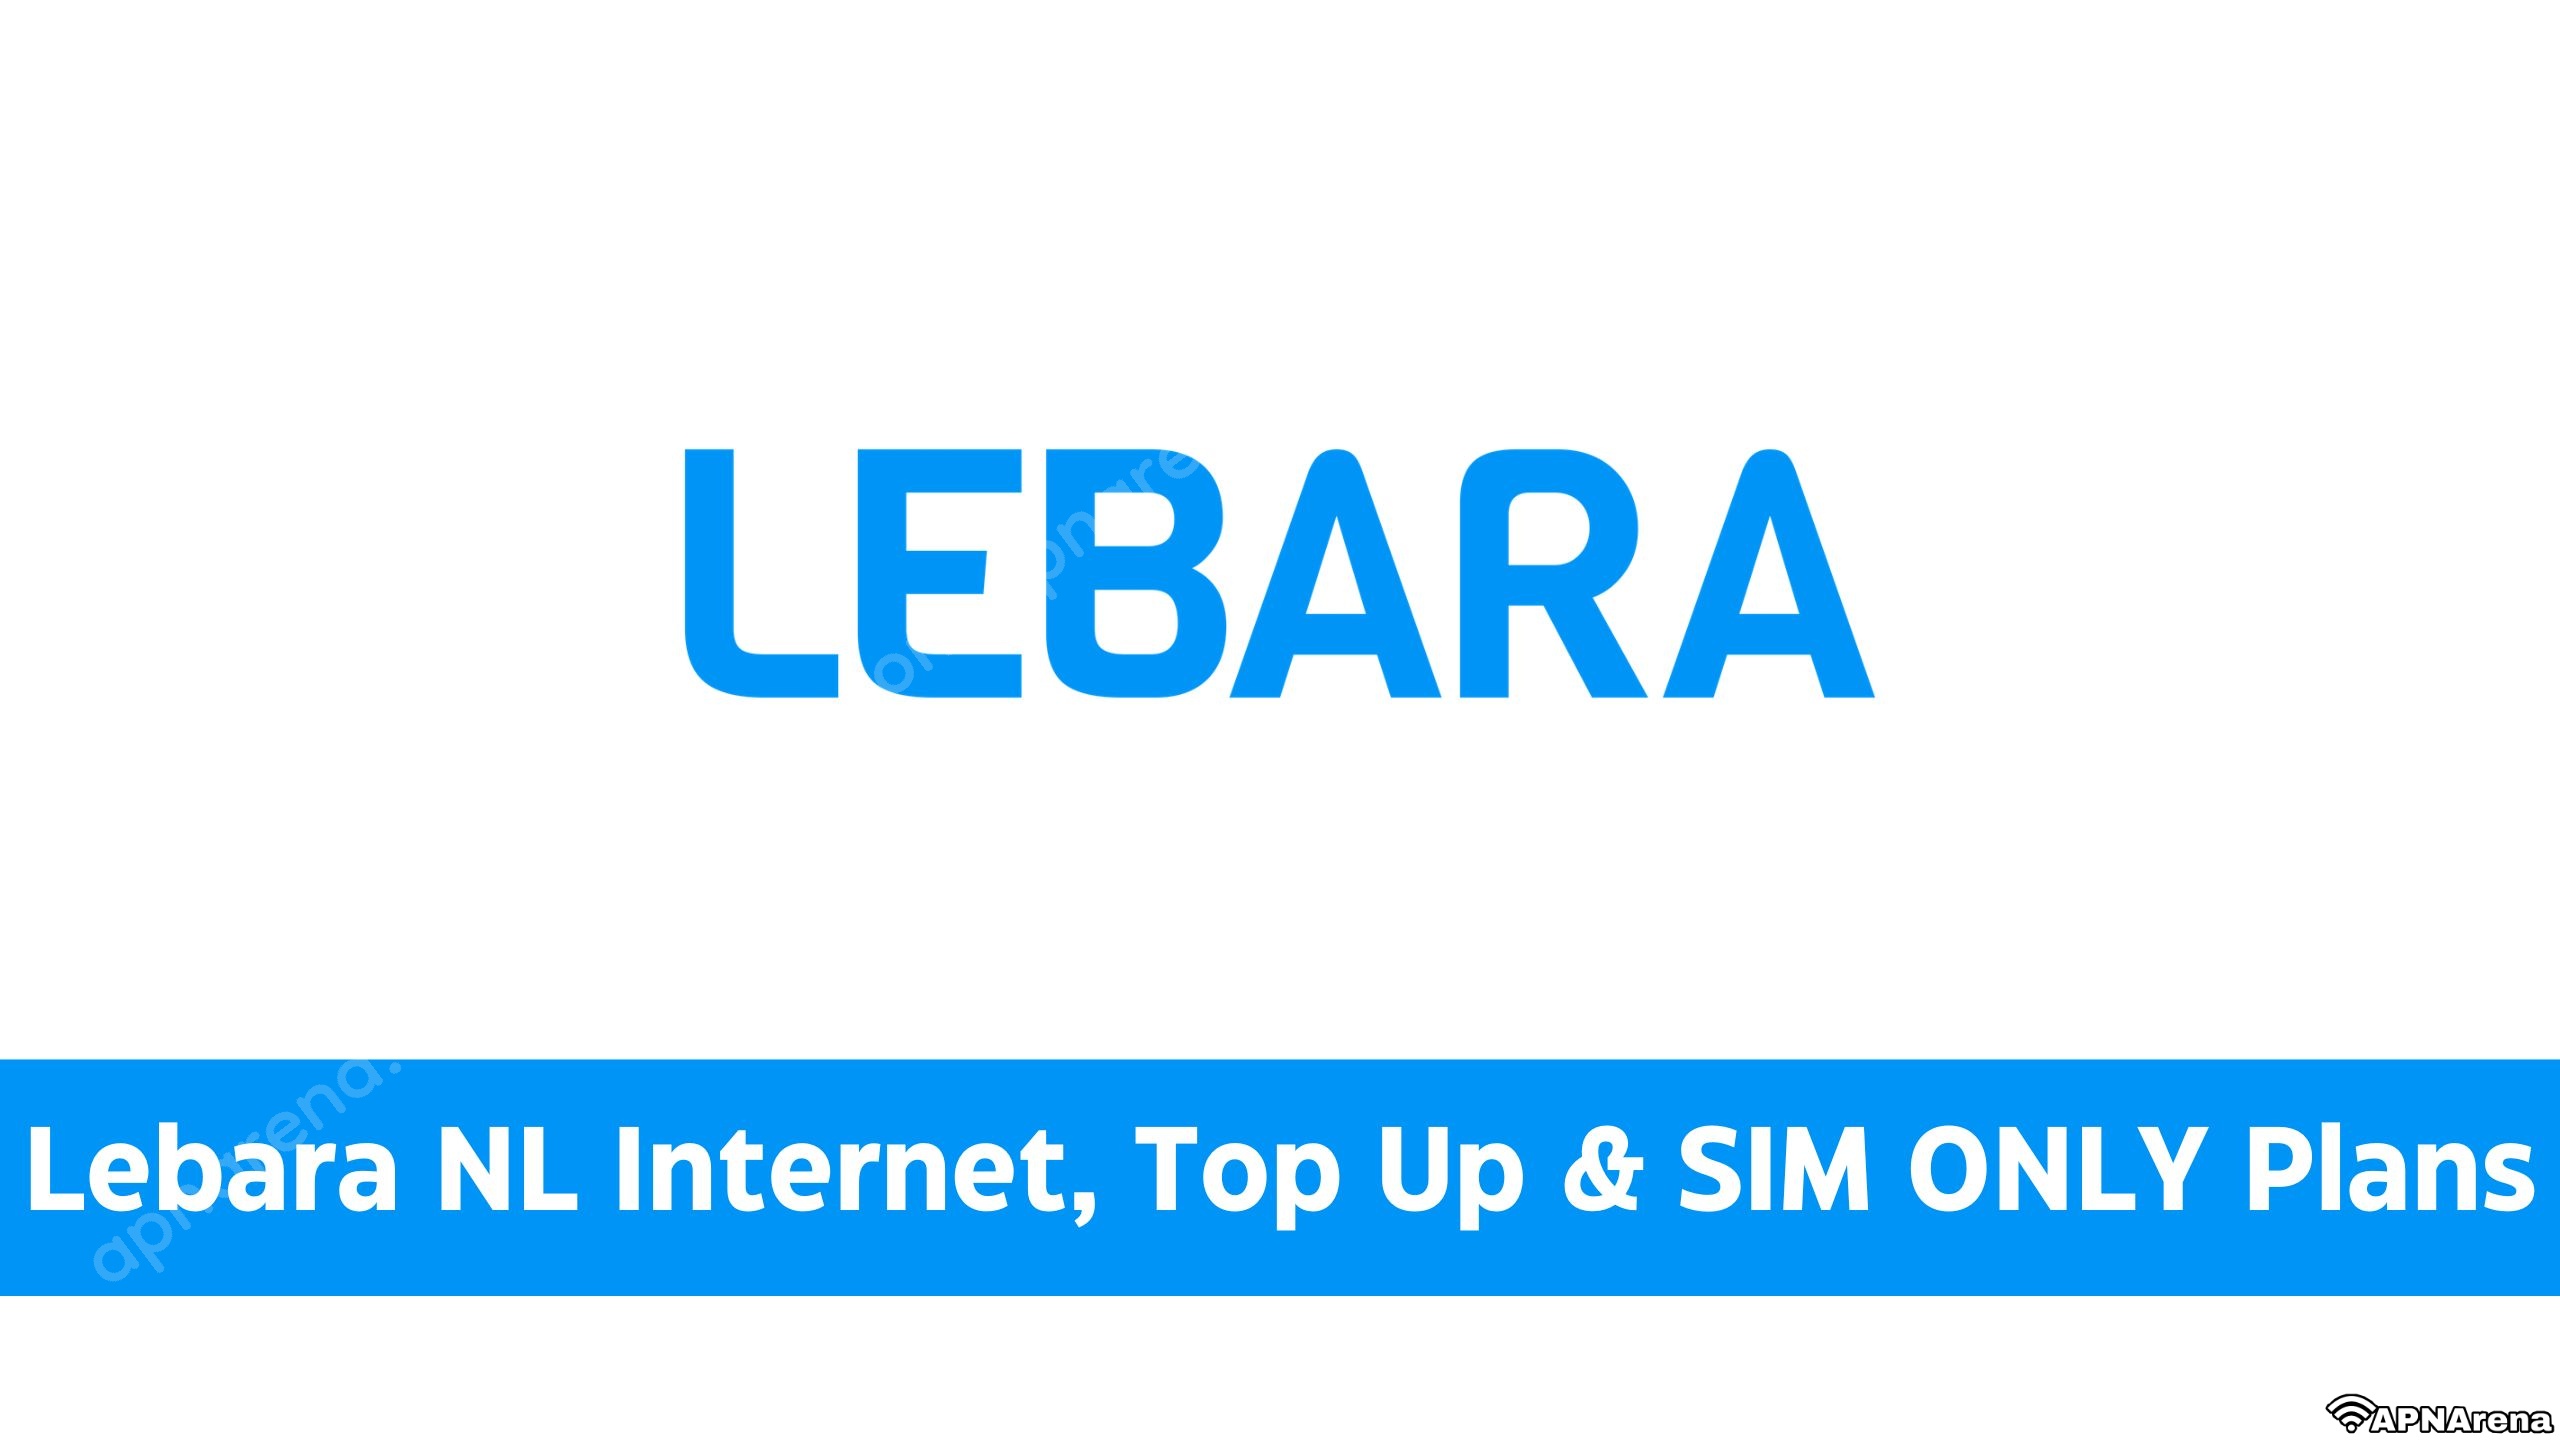 marv Sada At øge Lebara NL Internet, Top Up & SIM ONLY Plans | Opwaarderen, Beltegoed, &  Other Data Bundles - 3G 4G 5G LTE Internet Setting